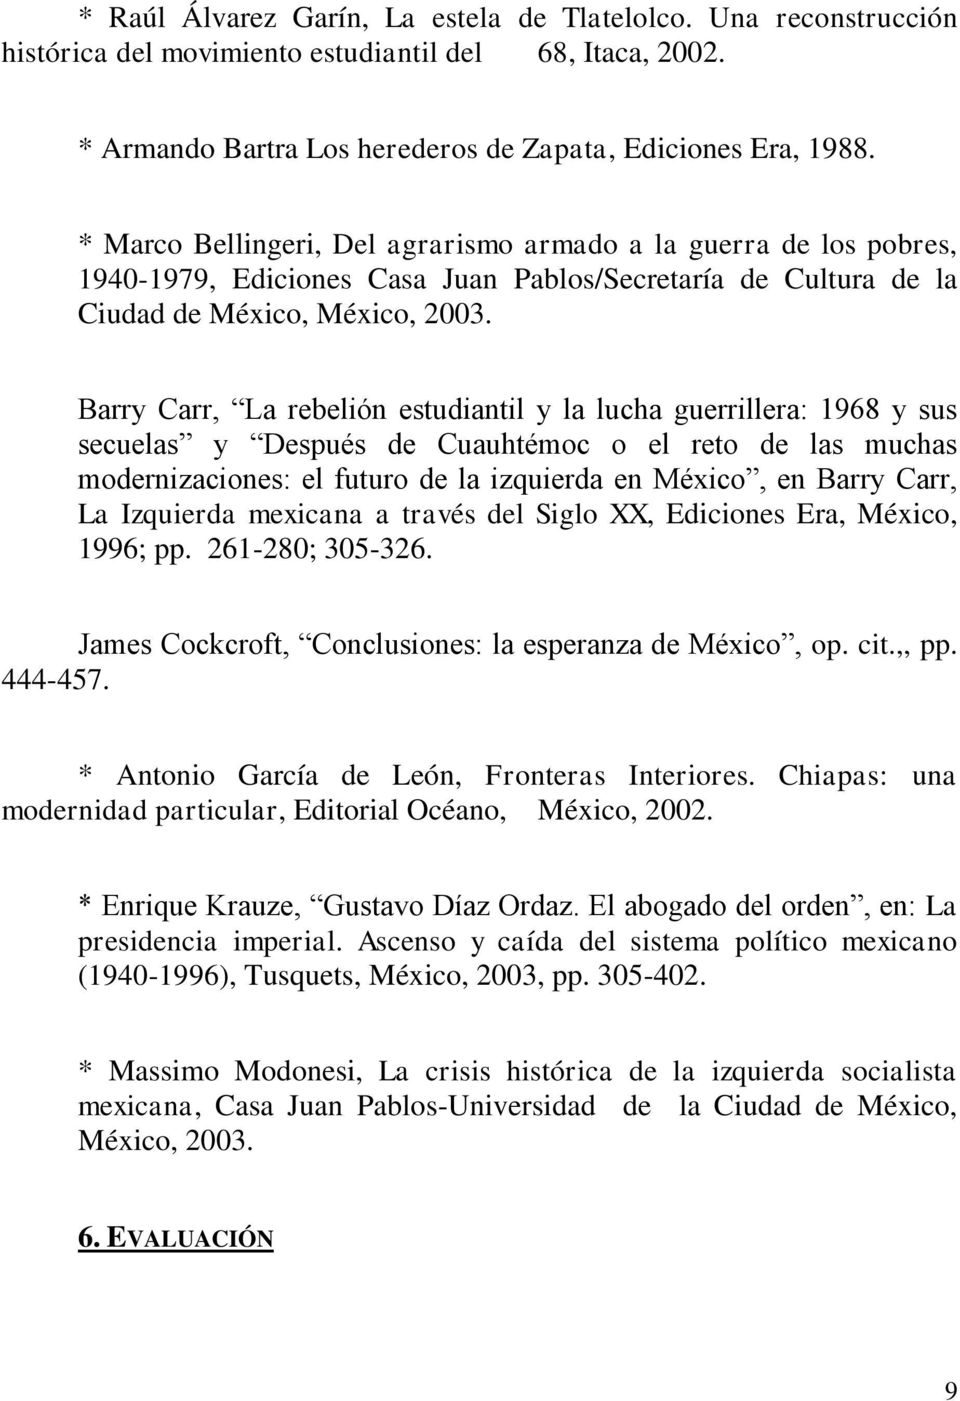 Barry Carr, La rebelión estudiantil y la lucha guerrillera: 1968 y sus secuelas y Después de Cuauhtémoc o el reto de las muchas modernizaciones: el futuro de la izquierda en México, en Barry Carr, La